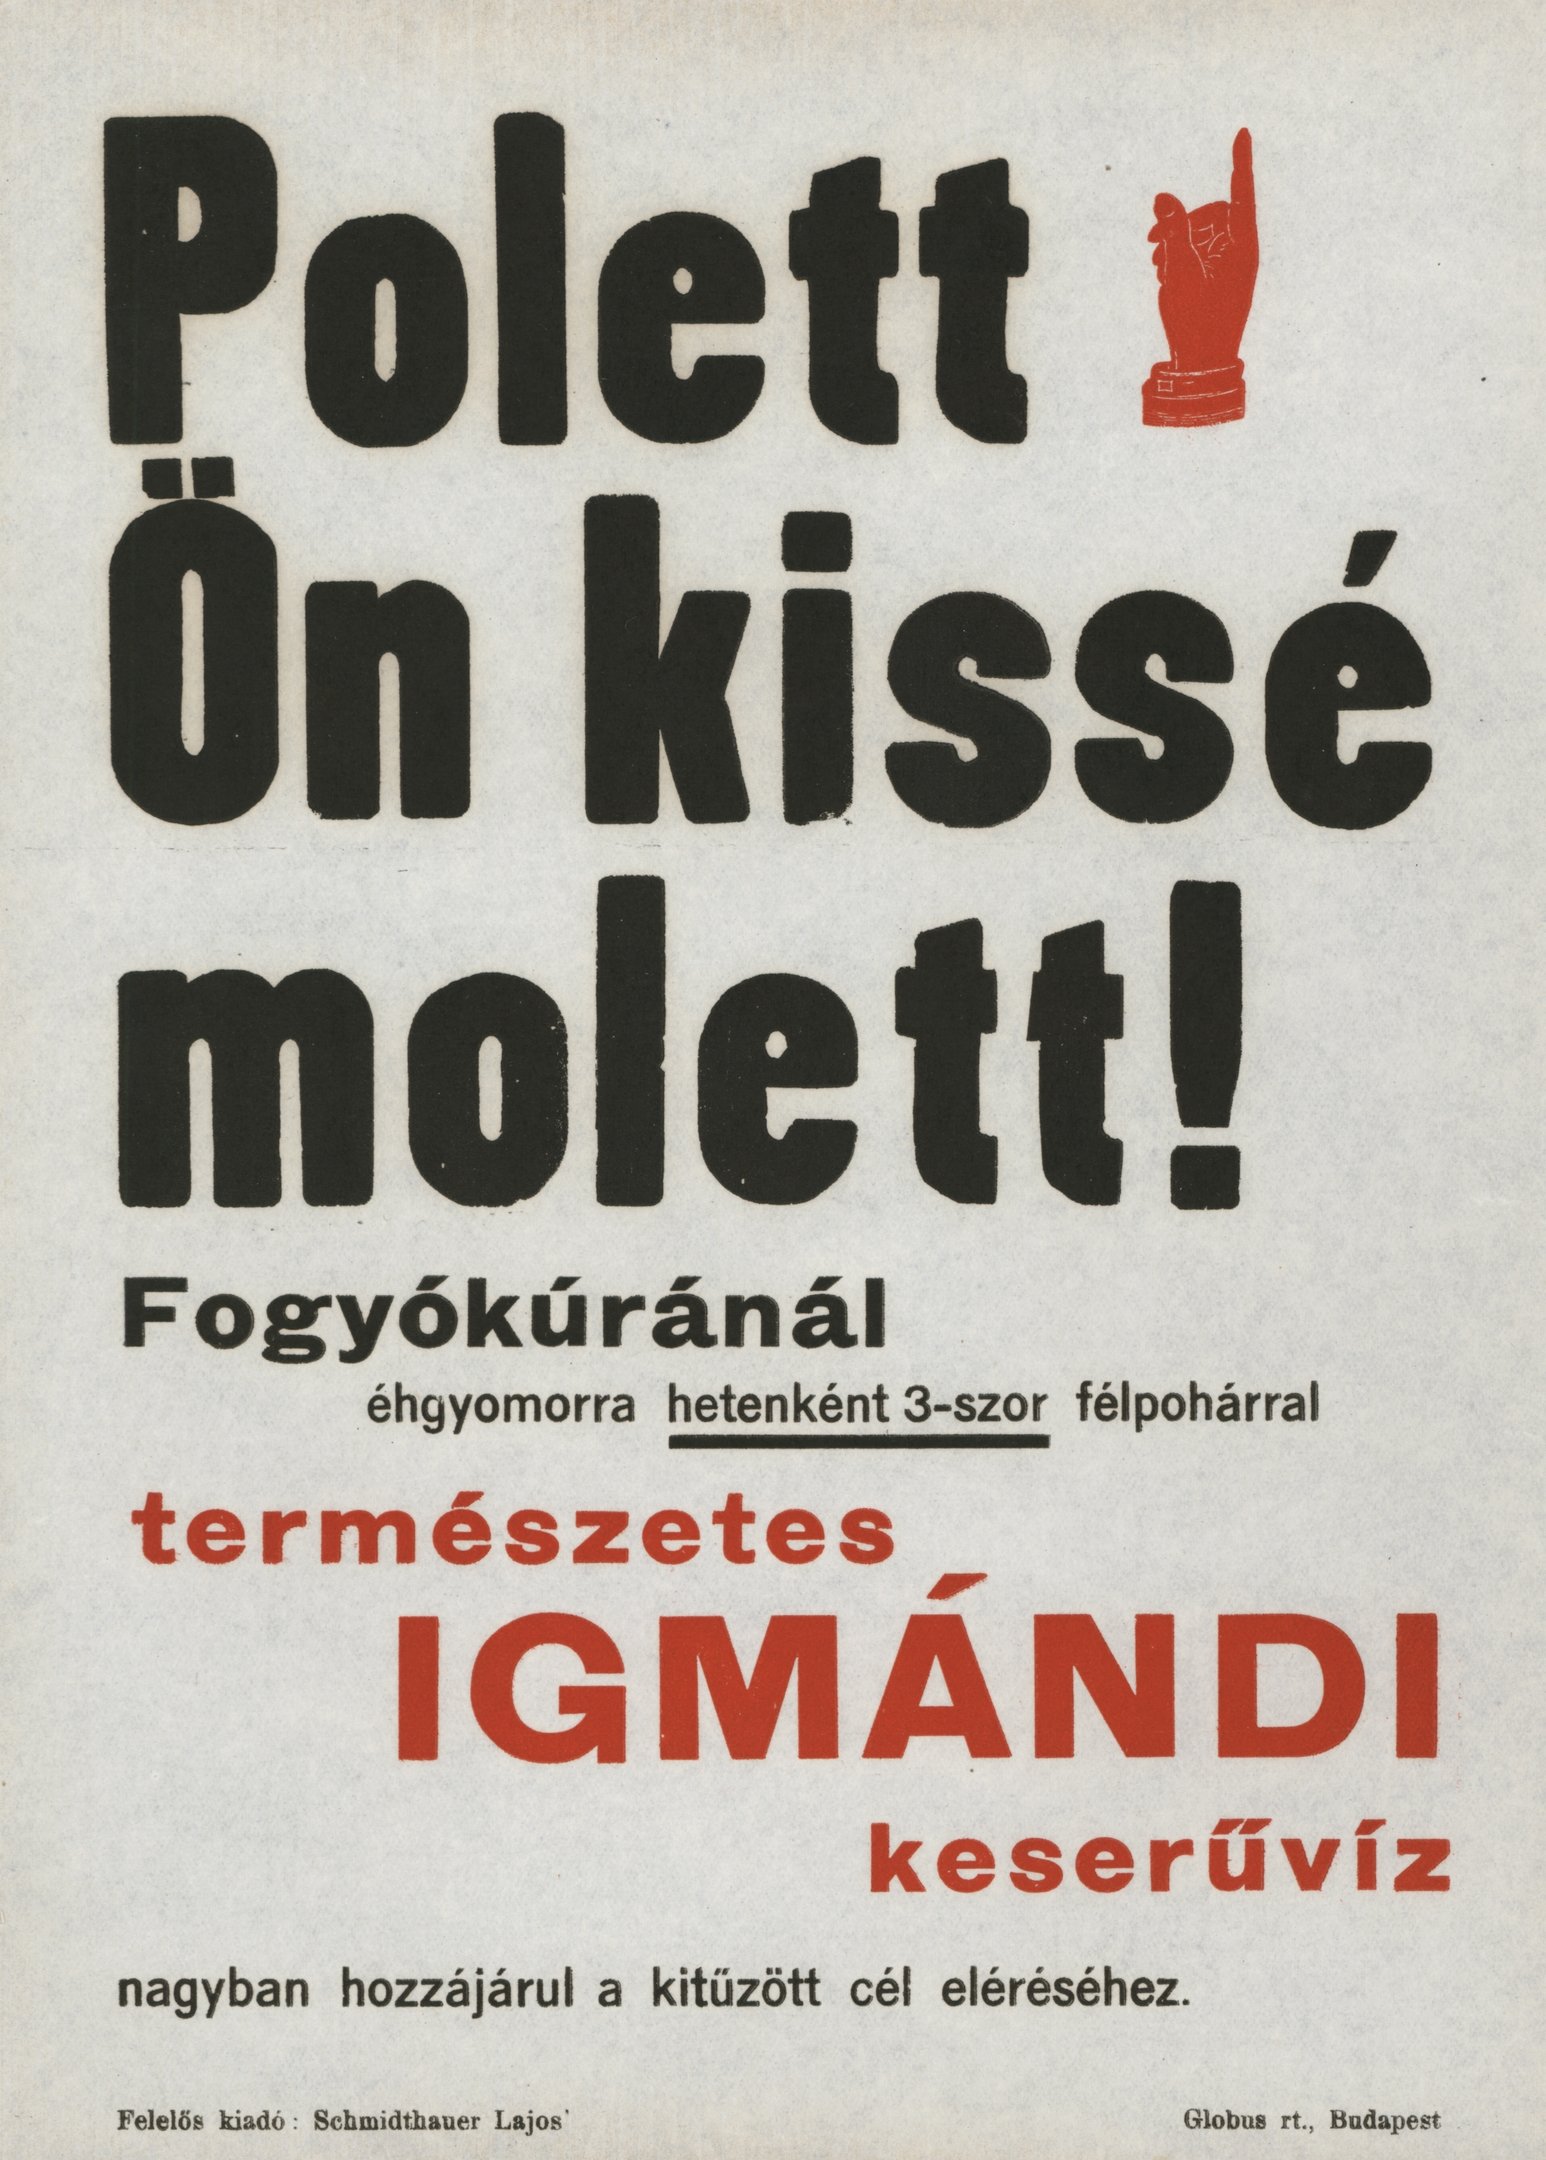 Polett, Ön kissé molett! - Igmándi keserűvíz reklám-villamosplakátja (Magyar Környezetvédelmi és Vízügyi Múzeum - Duna Múzeum CC BY-NC-SA)